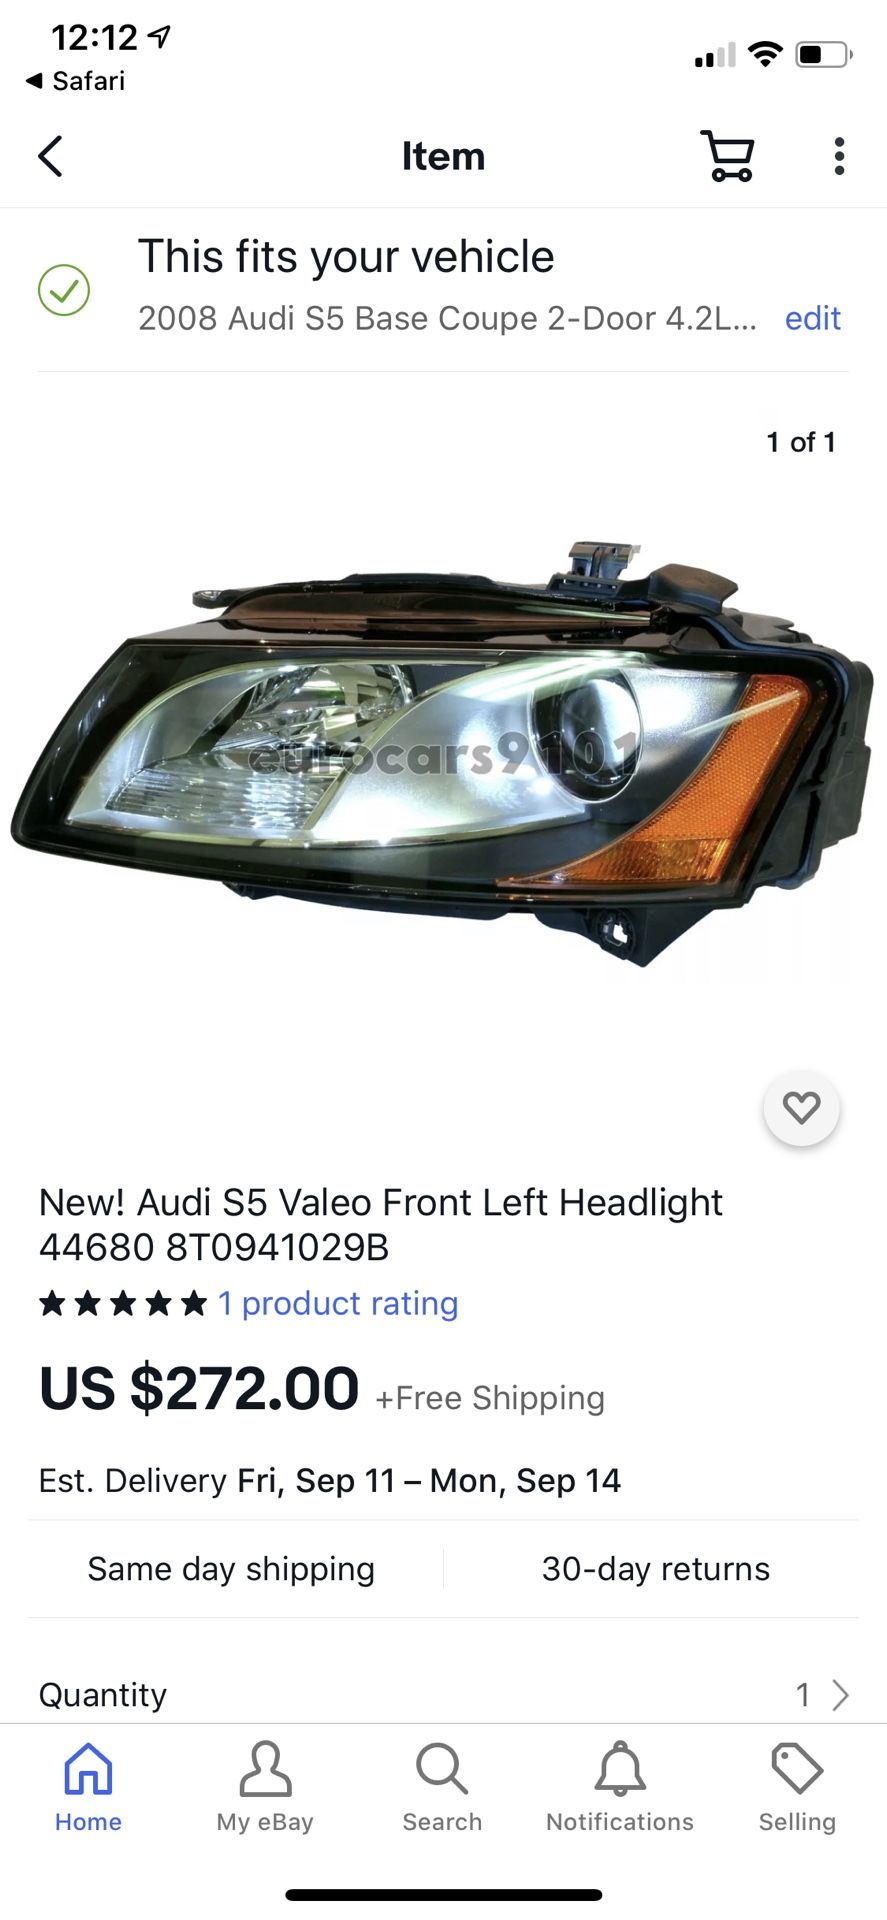 Valeo (OEM Audi) left headlamp